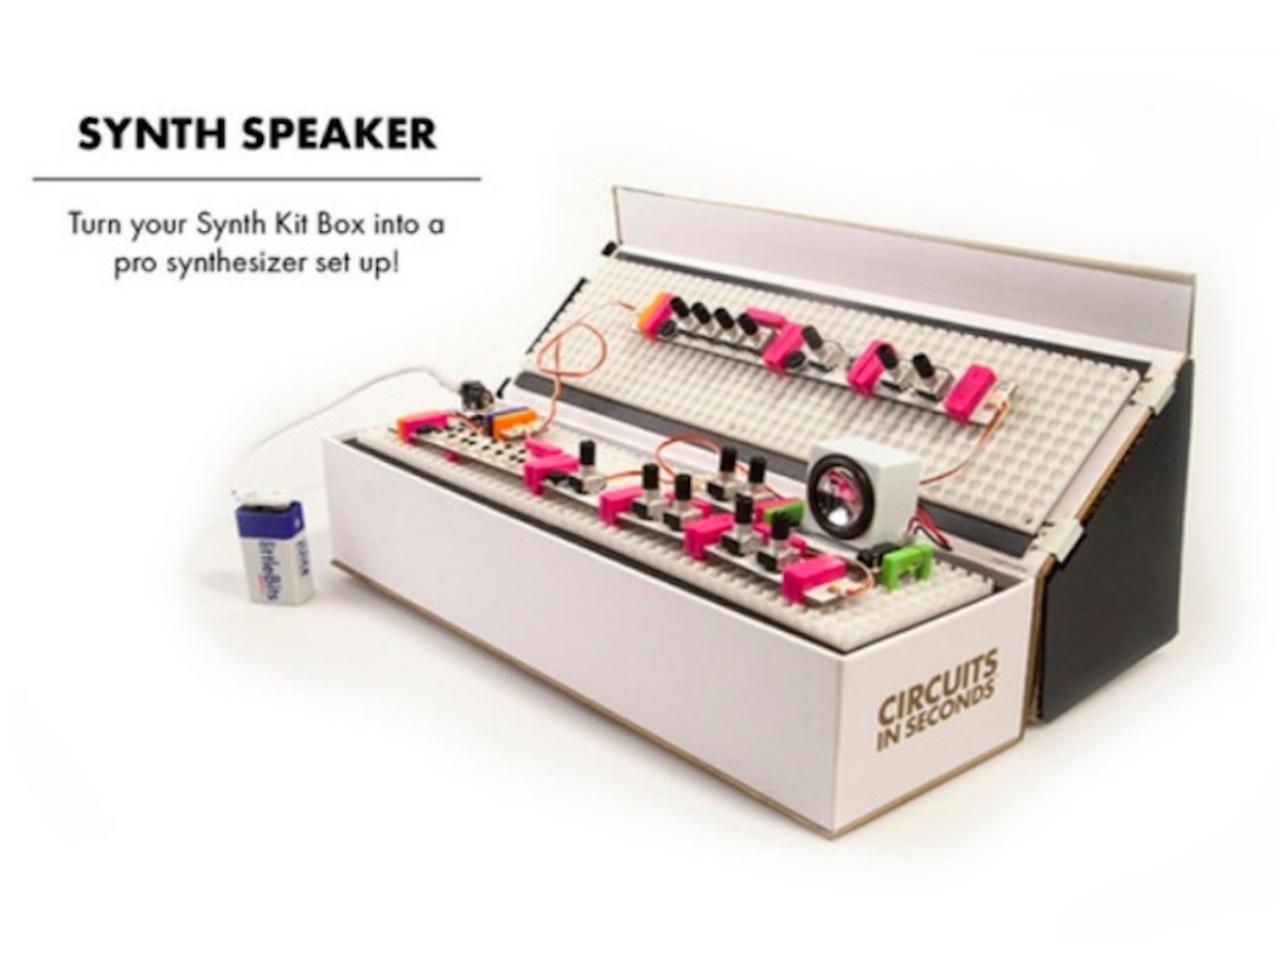 【本日のセール情報】AmazonでWinter Sale 2017が開催中！ littleBits電子工作モジュールや吸水速乾バスマットがお買い得に